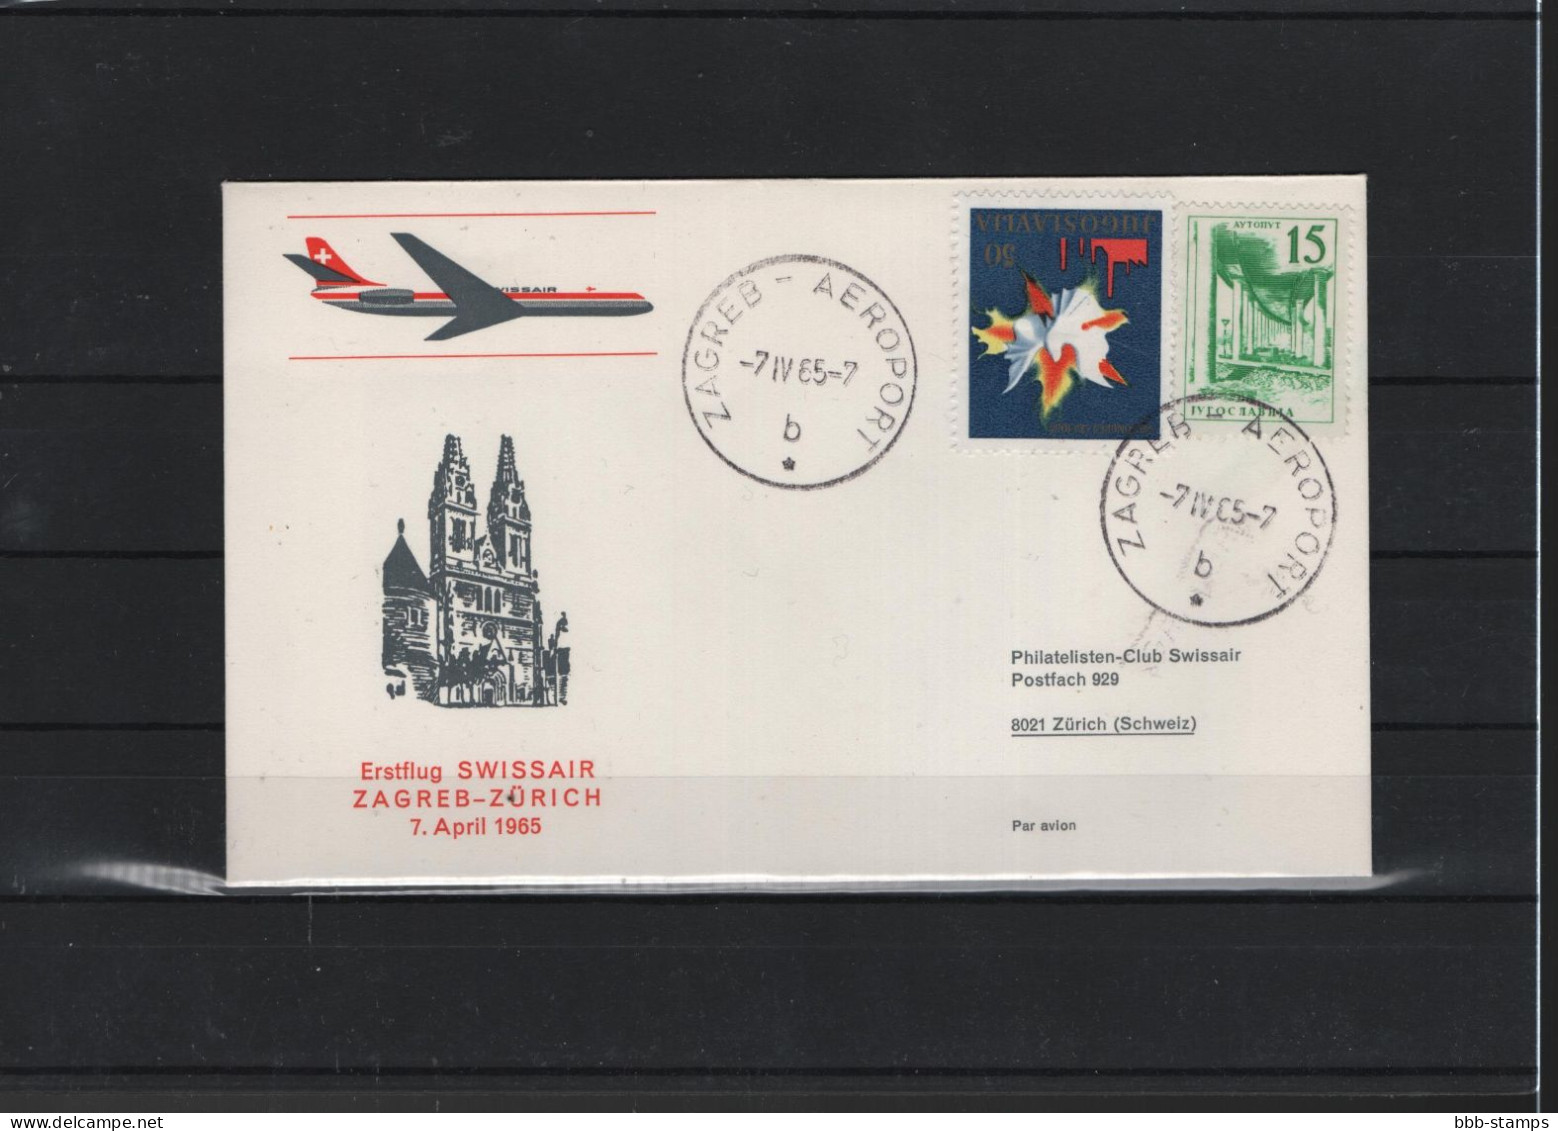 Schweiz Air Mail Swissair  FFC  7.4.1965 Zagred - Zürich - Erst- U. Sonderflugbriefe